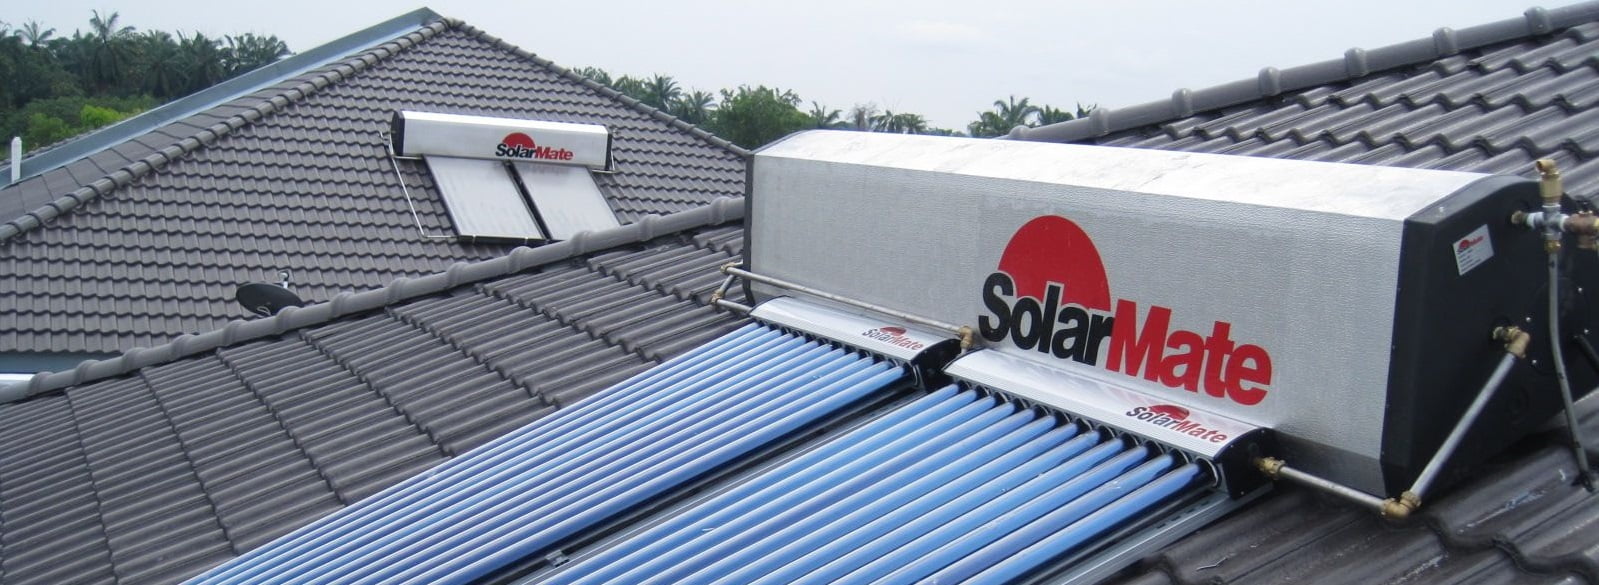 SolarMate Malaysia